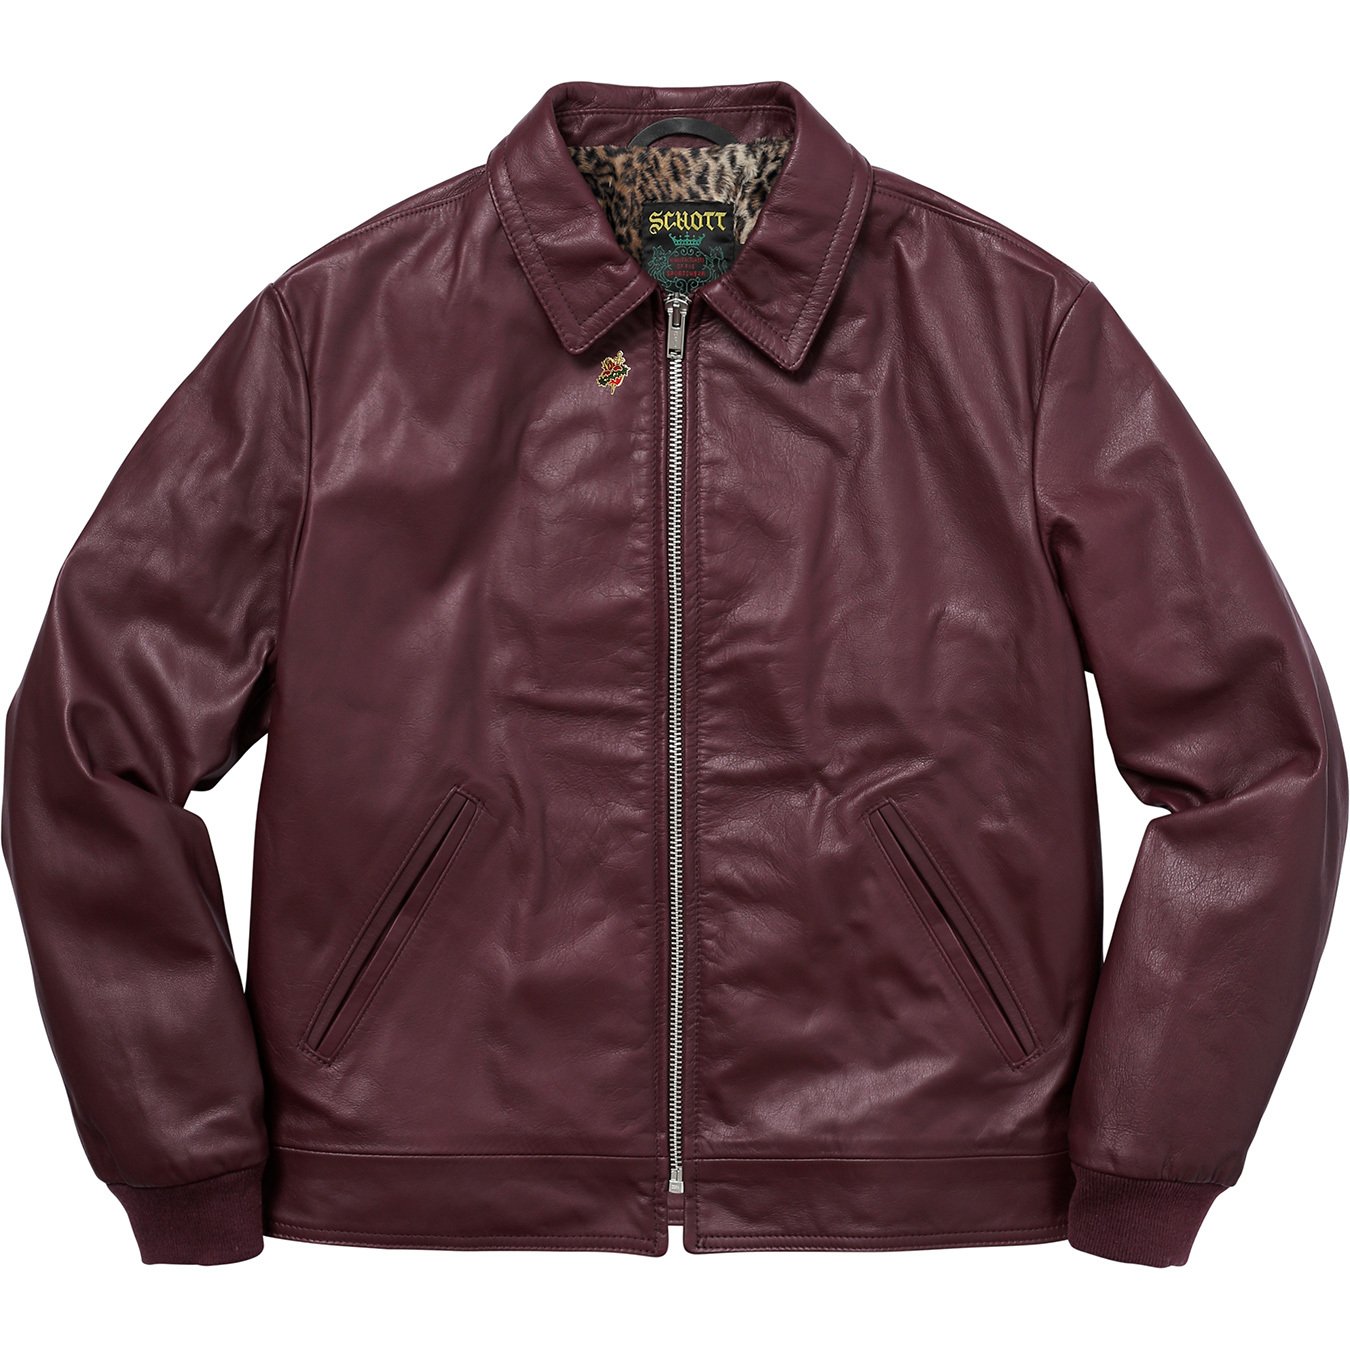 Details Supreme Supreme®/Schott® Leopard Lined Leather Work Jacket